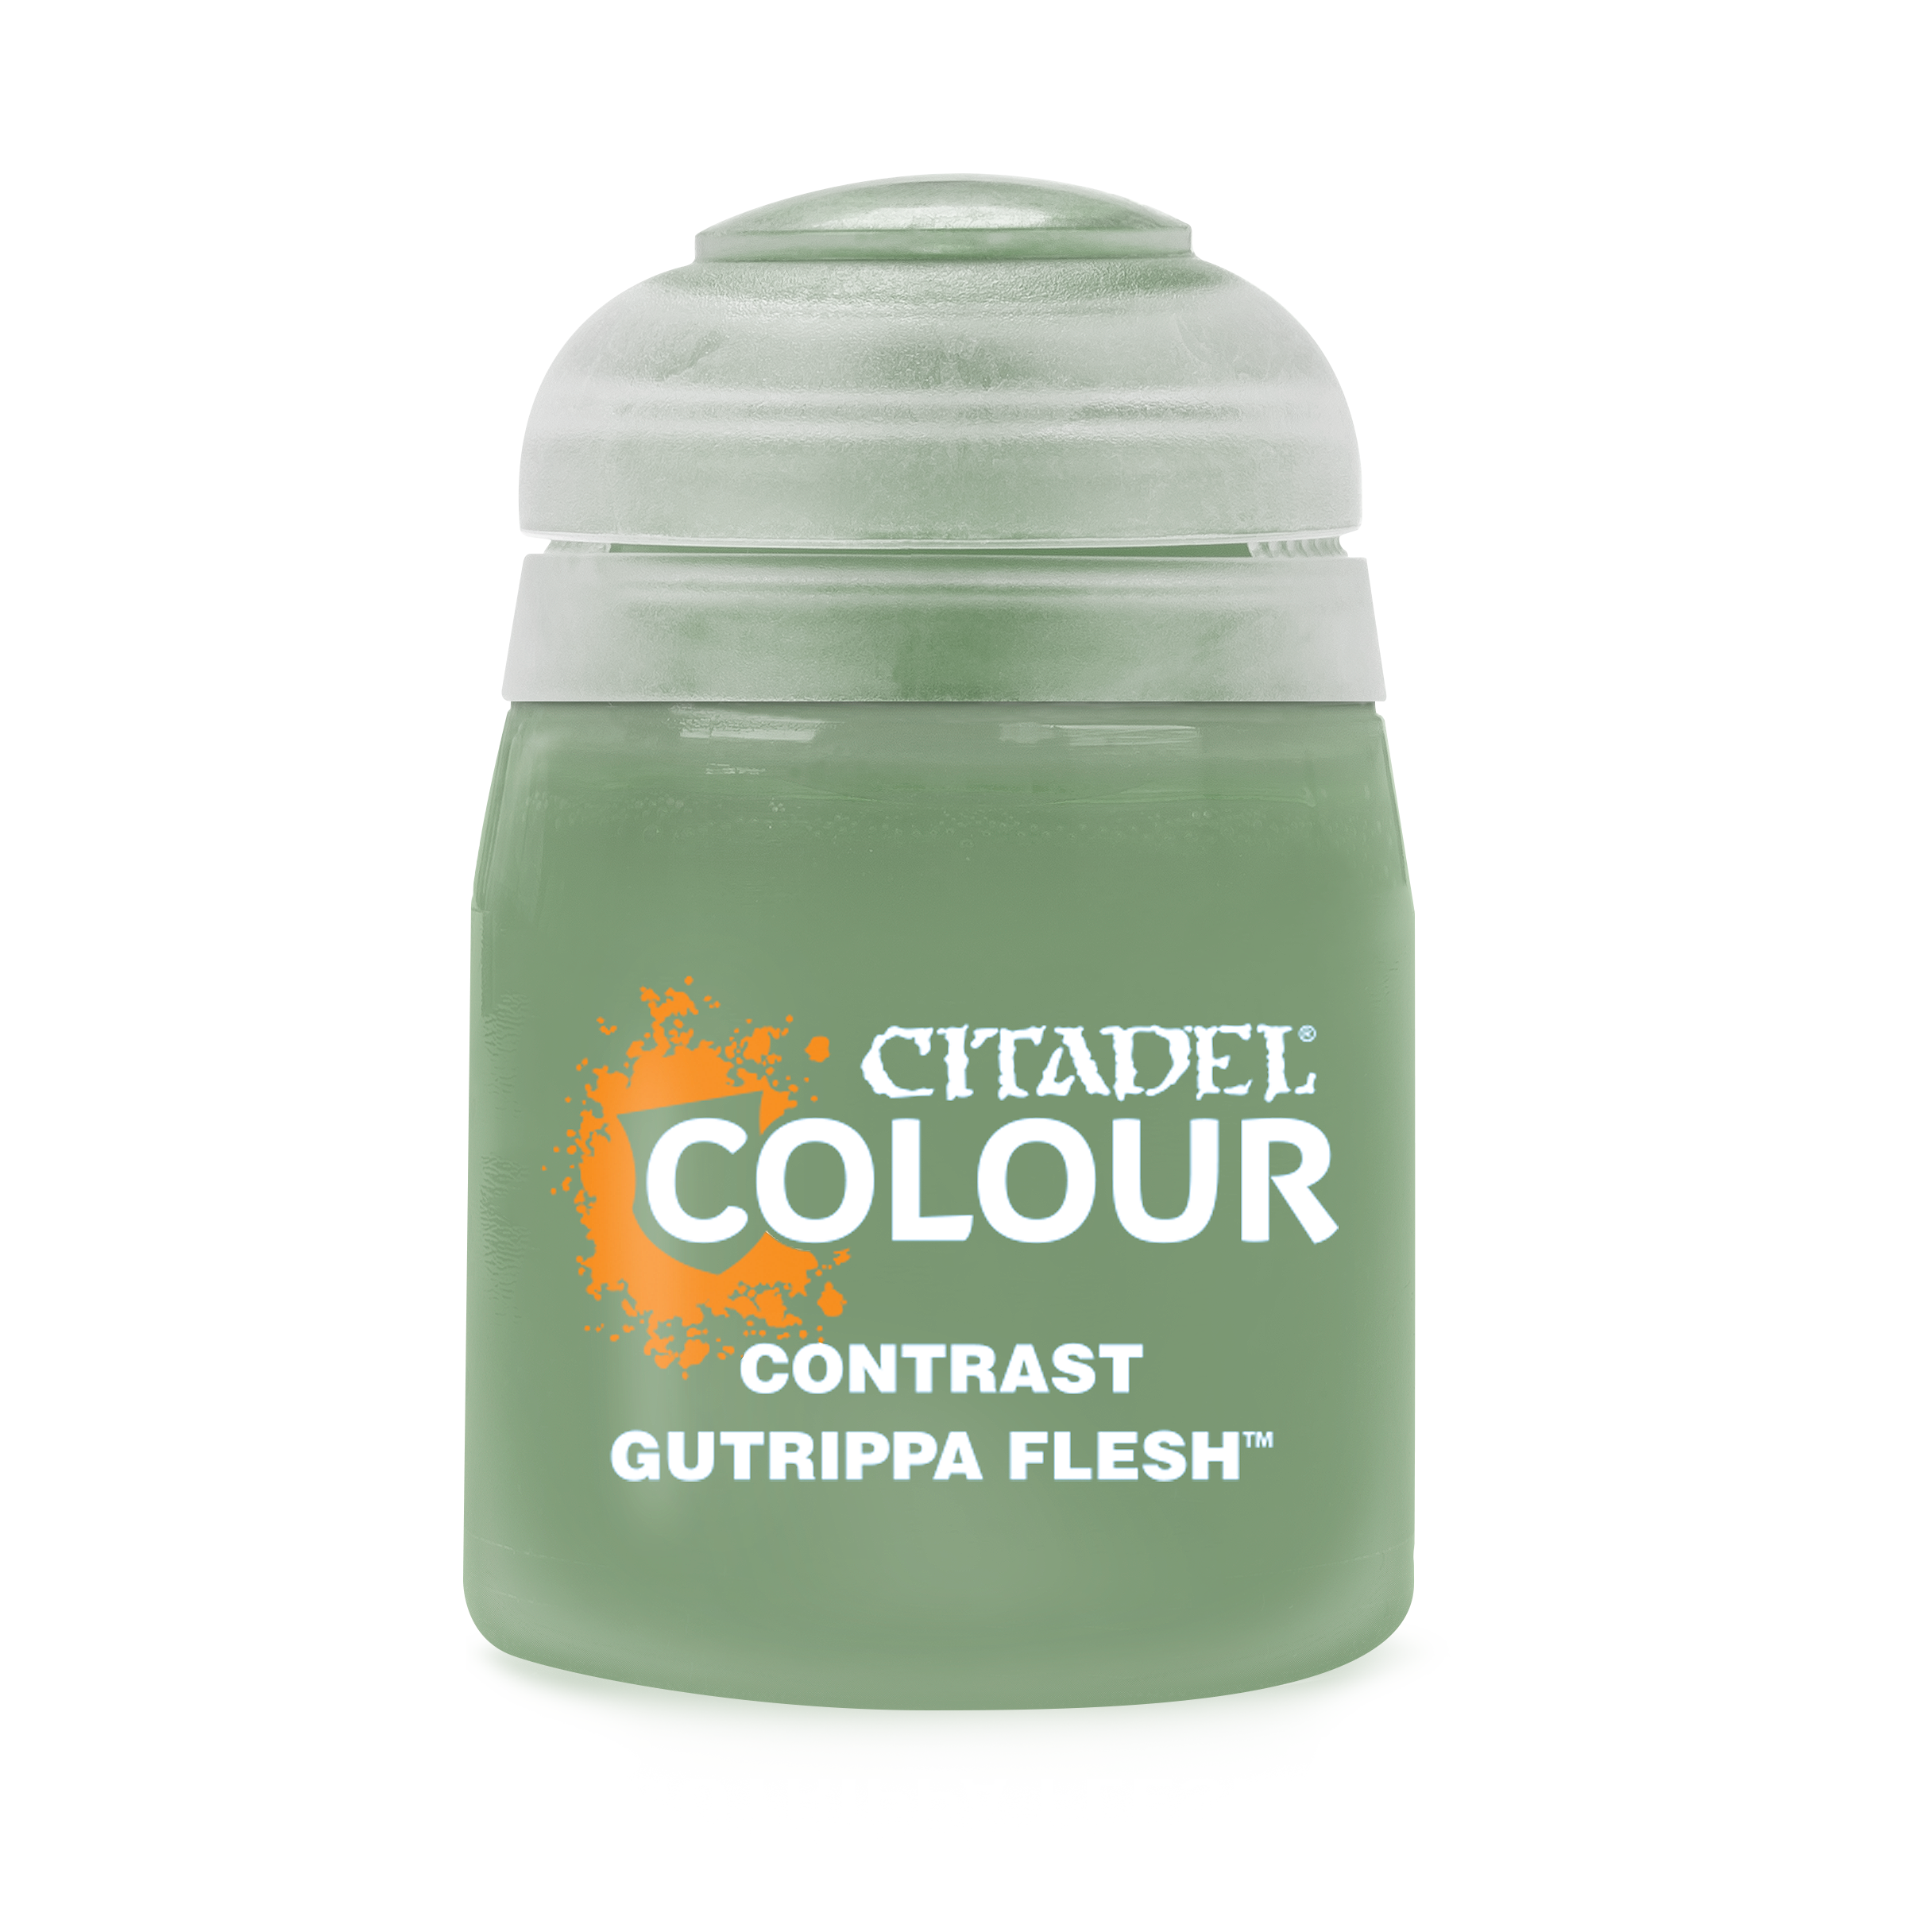 Gutrippa Flesh | Lots Moore NSW